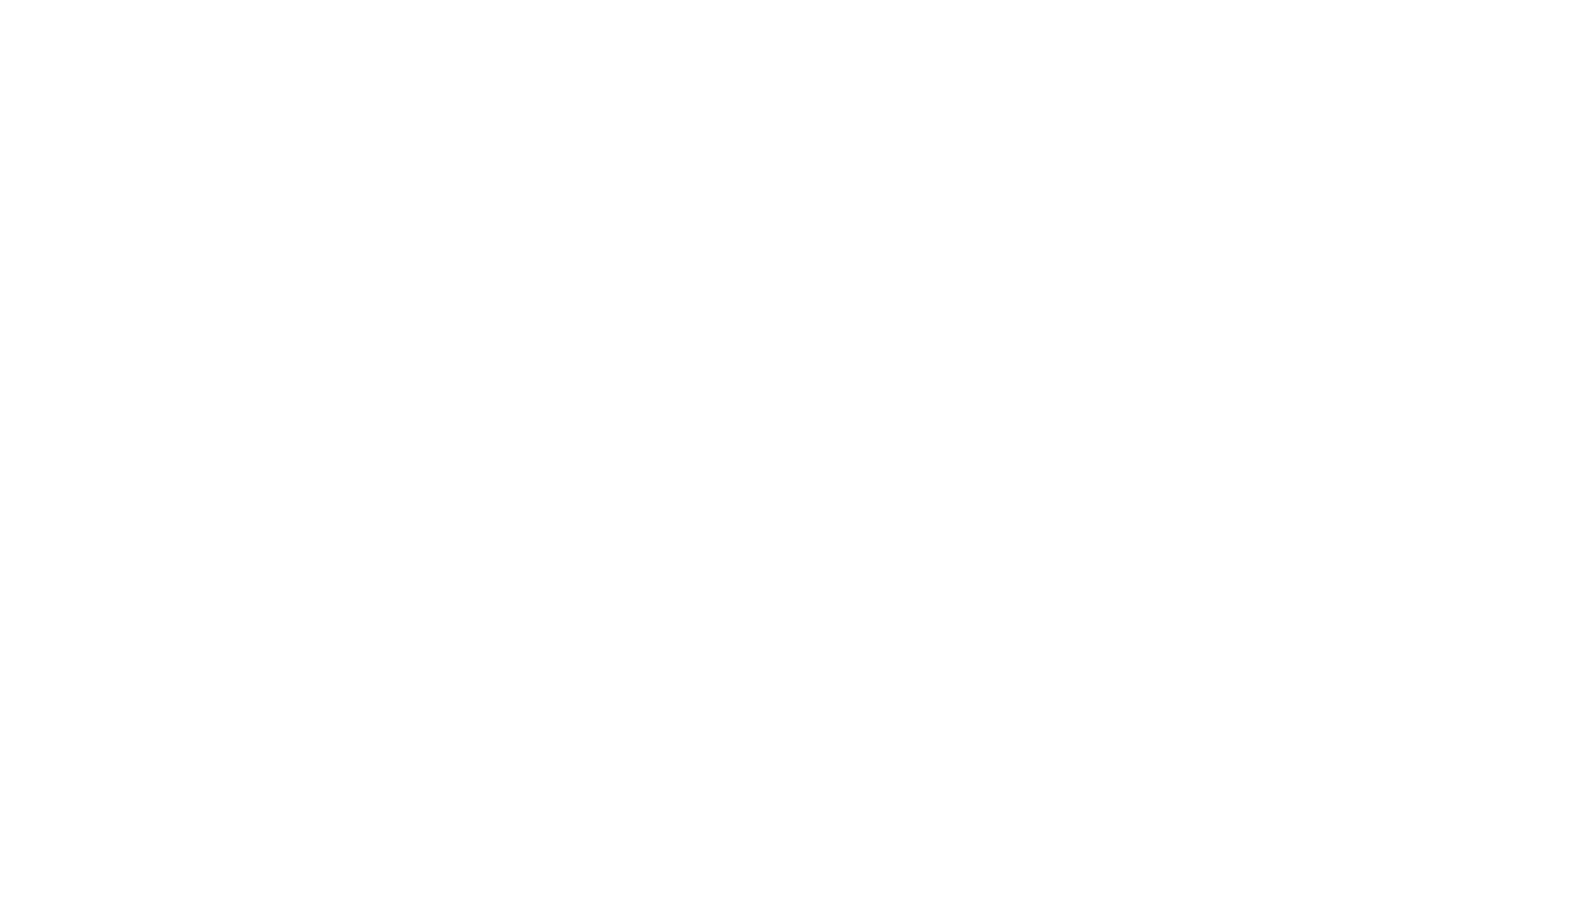 VOG